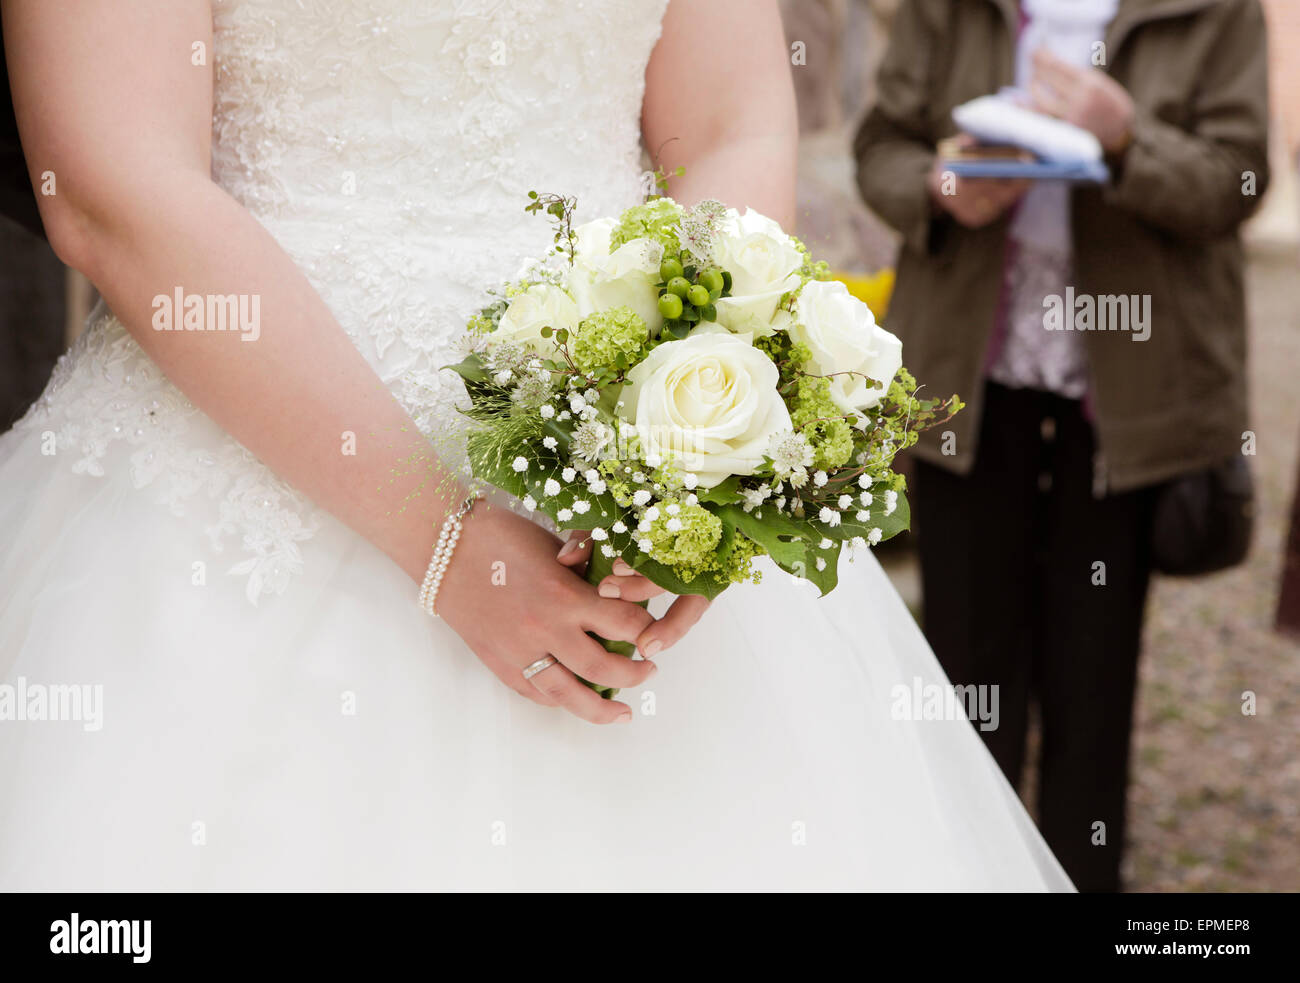 Une mariée dans une robe de mariée blanche tenant un bouquet de roses dans la main Banque D'Images